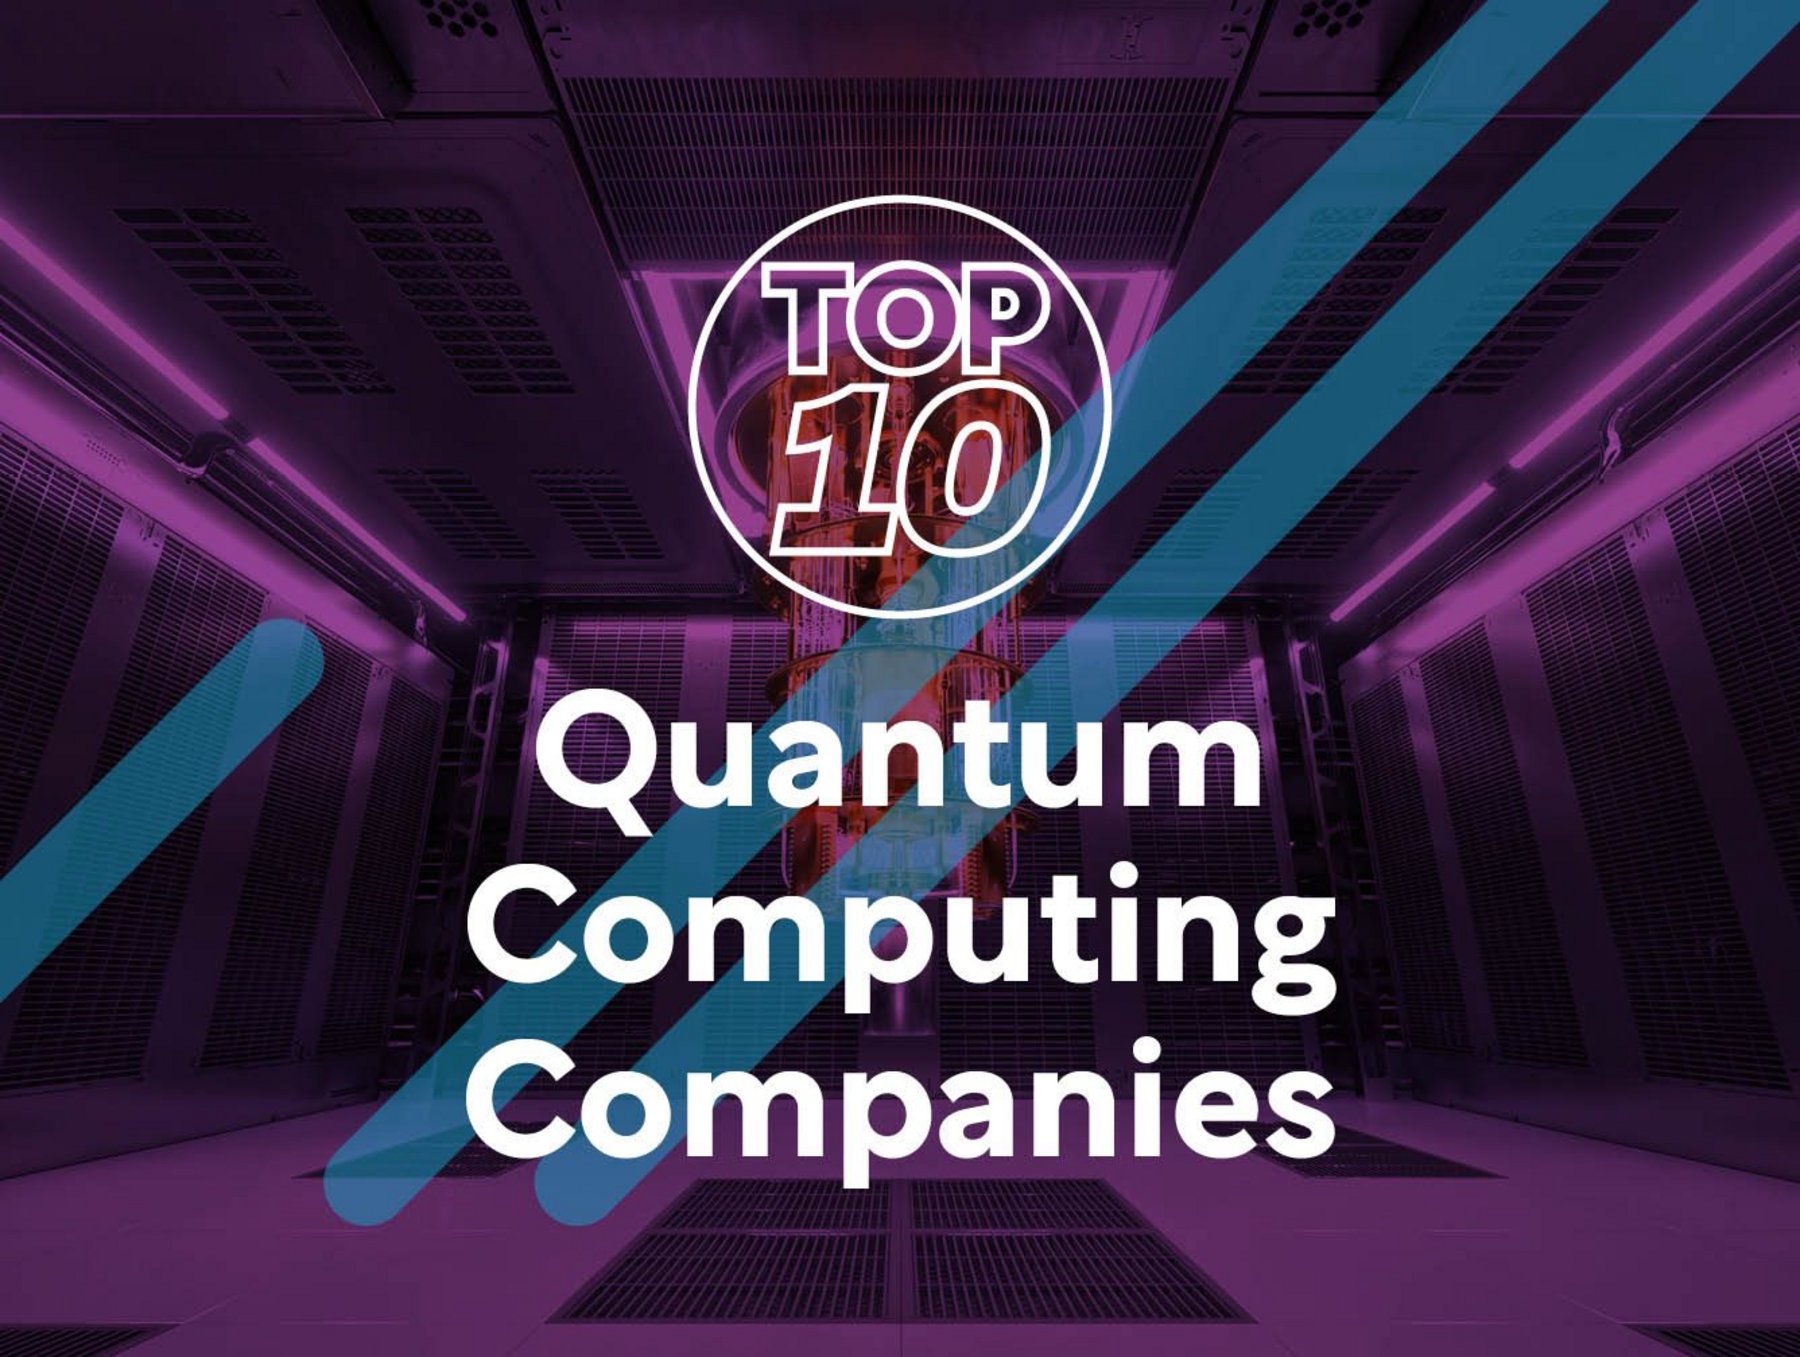 Top 10: Quantum computing companies